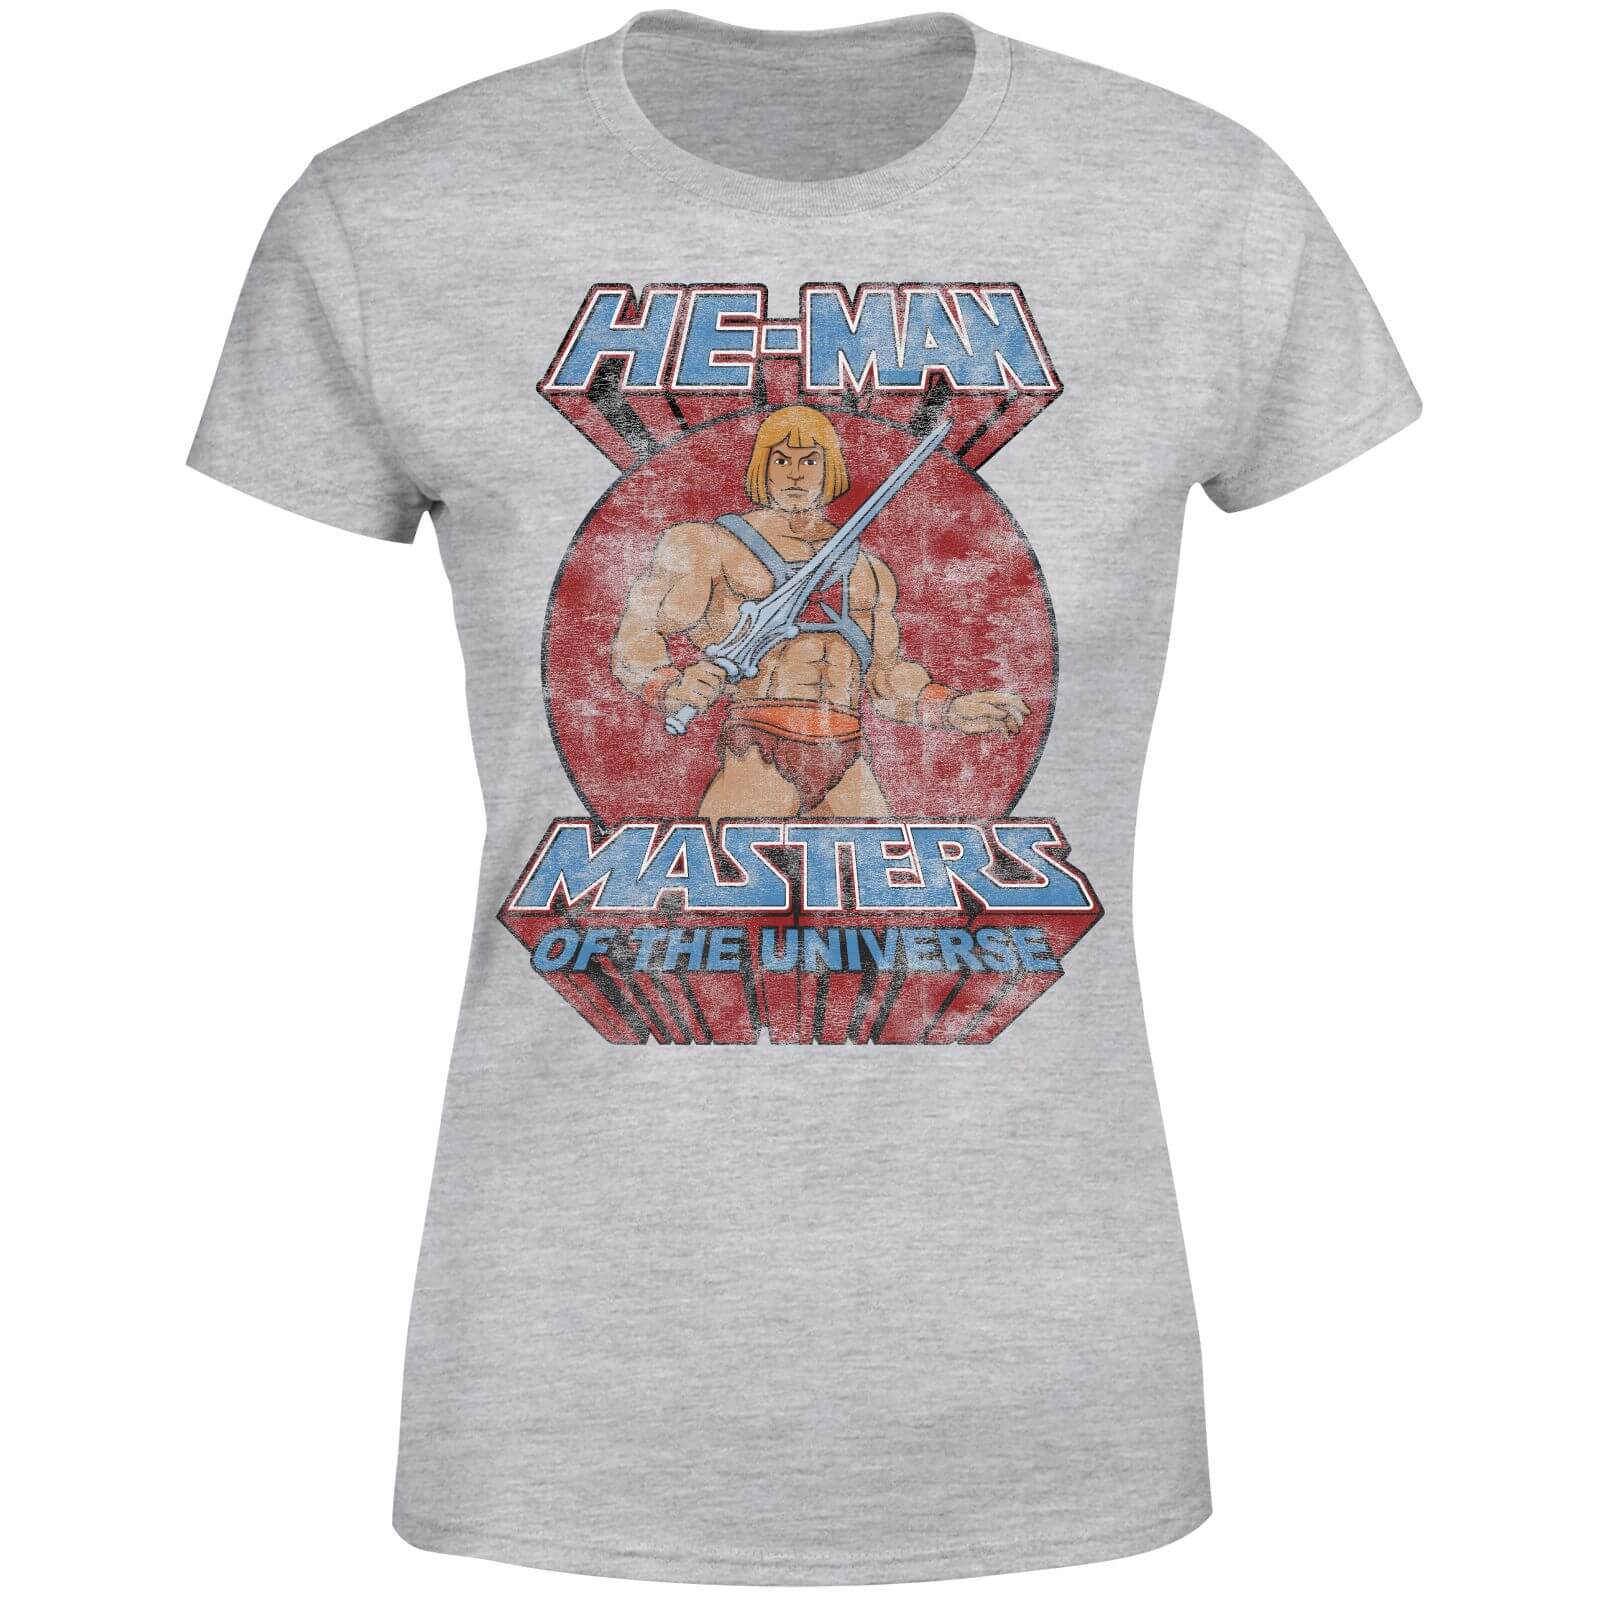 He-Man Distressed Women's T-Shirt - Grey - 3XL - Grey